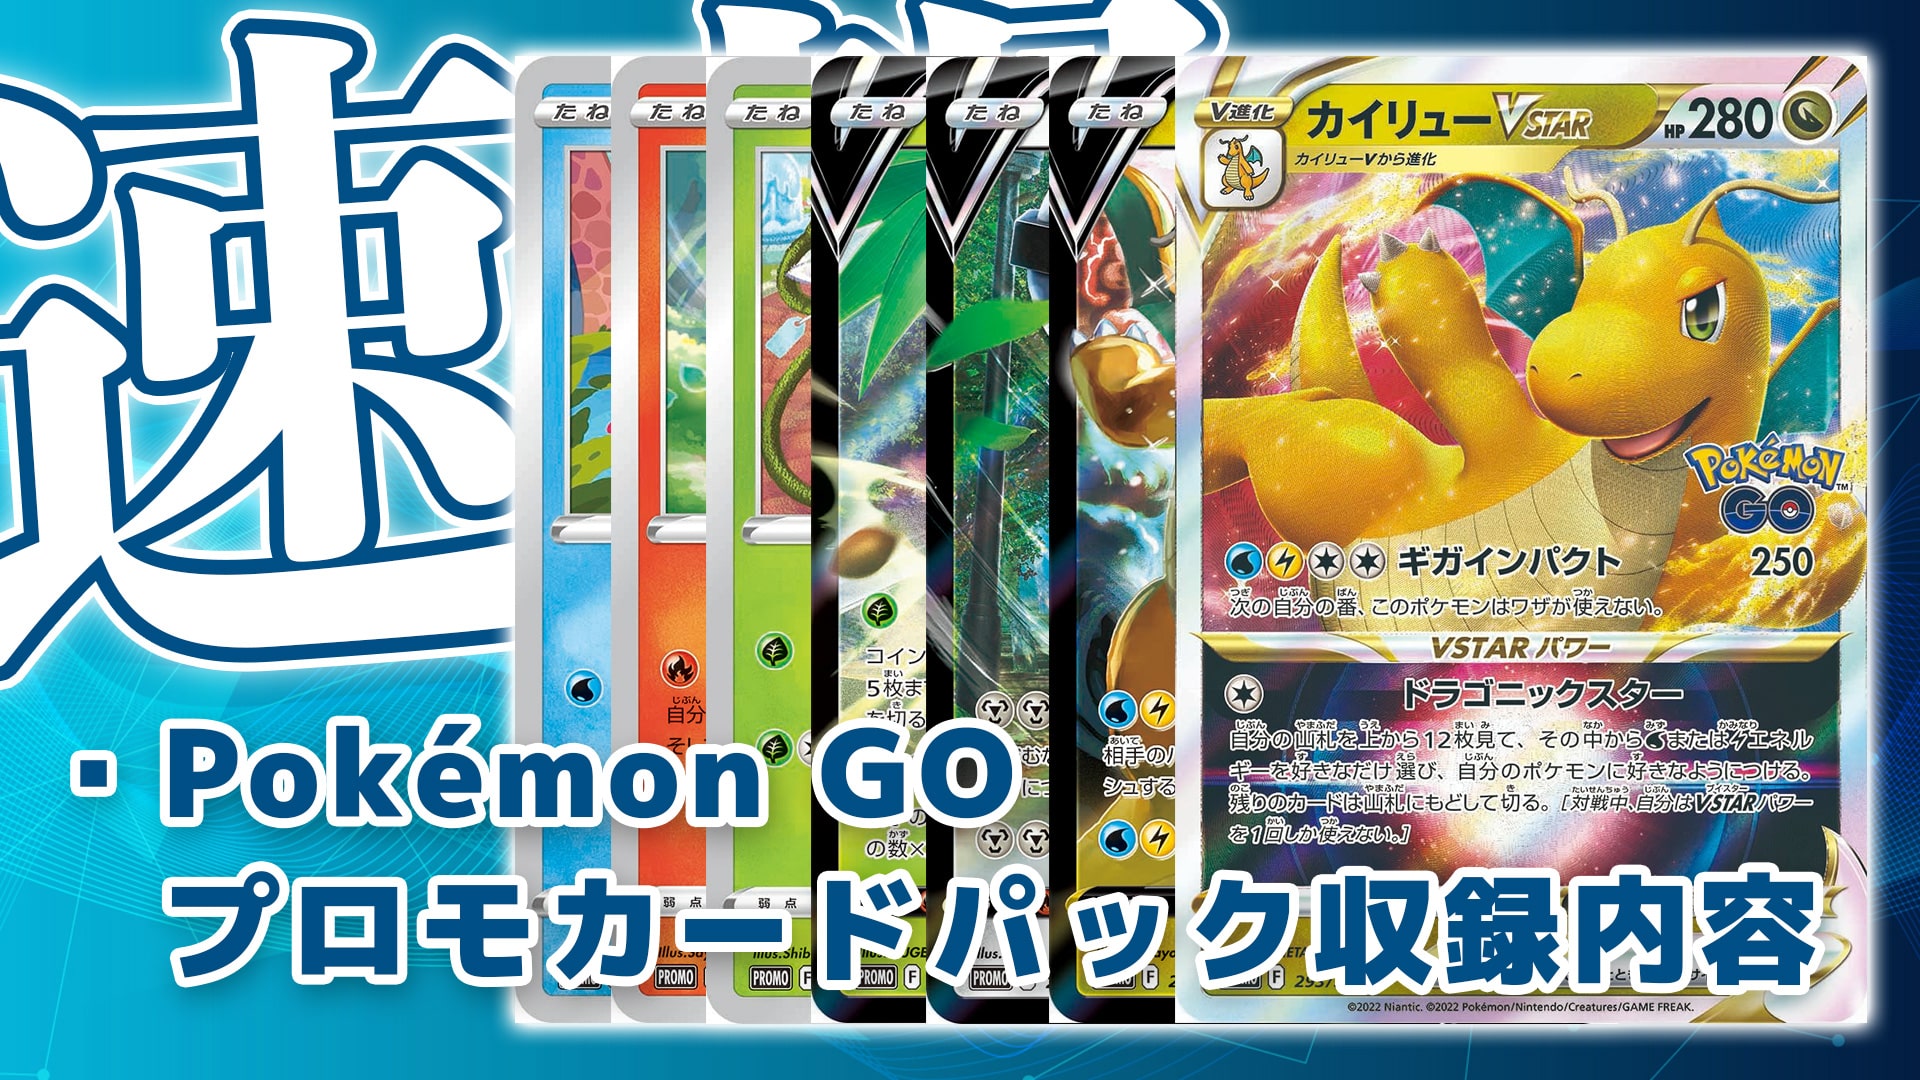 収録内容】『Pokémon GO プロモカードパック』収録カードリスト《カイリューVSTAR》《カイリューV》《メルメタルV》など判明【ポケカ速報】  | 第二倉庫メディア